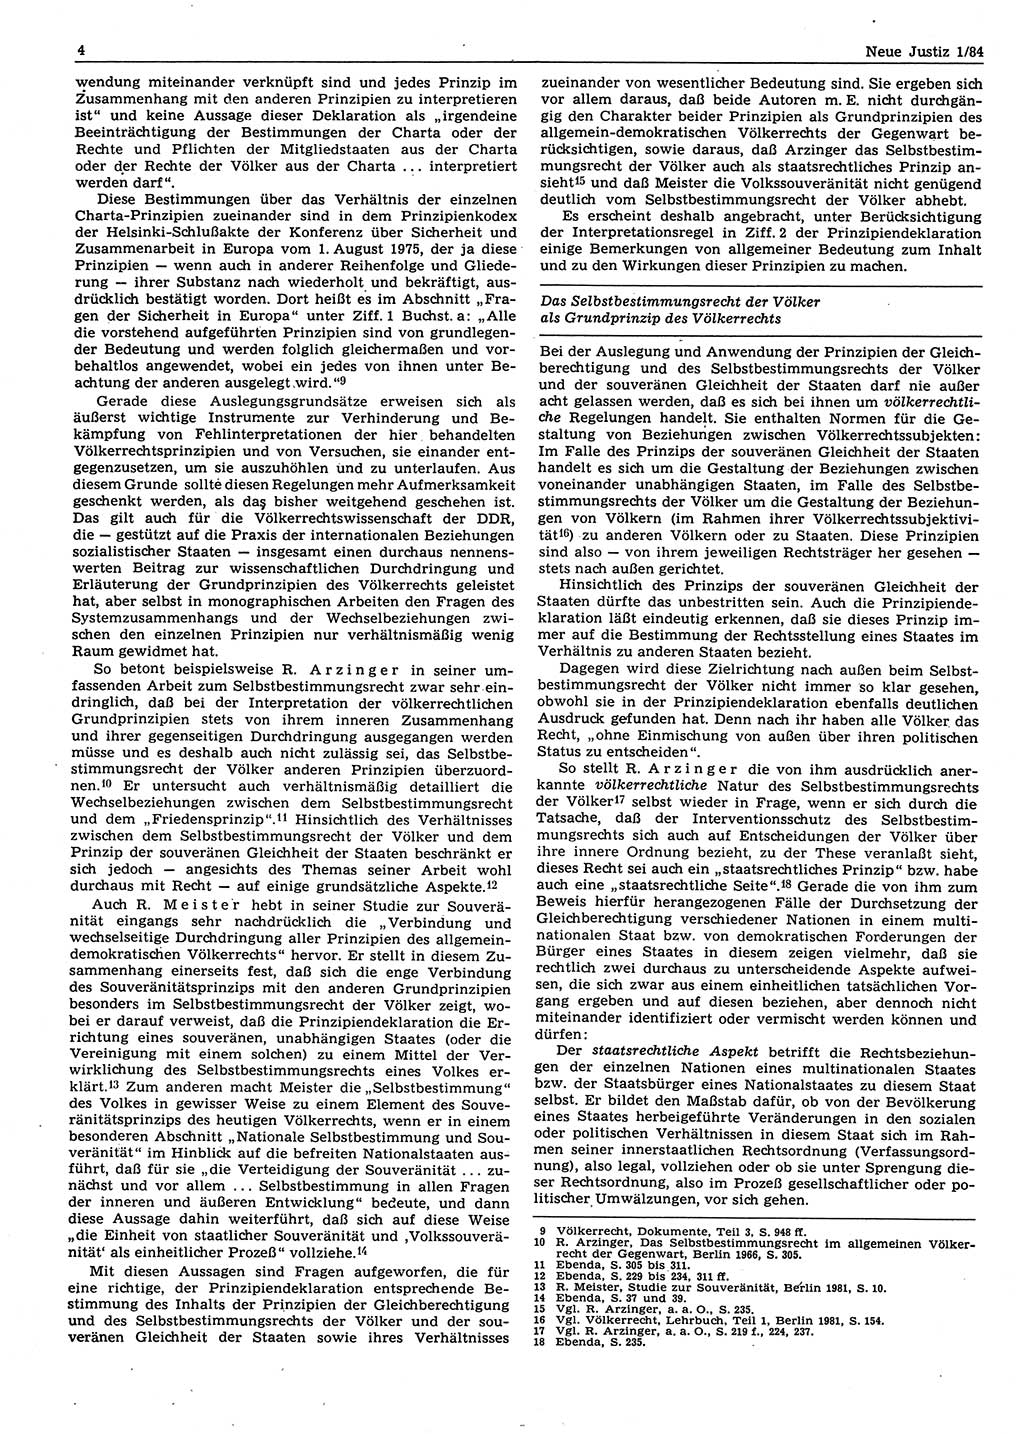 Neue Justiz (NJ), Zeitschrift für sozialistisches Recht und Gesetzlichkeit [Deutsche Demokratische Republik (DDR)], 38. Jahrgang 1984, Seite 4 (NJ DDR 1984, S. 4)